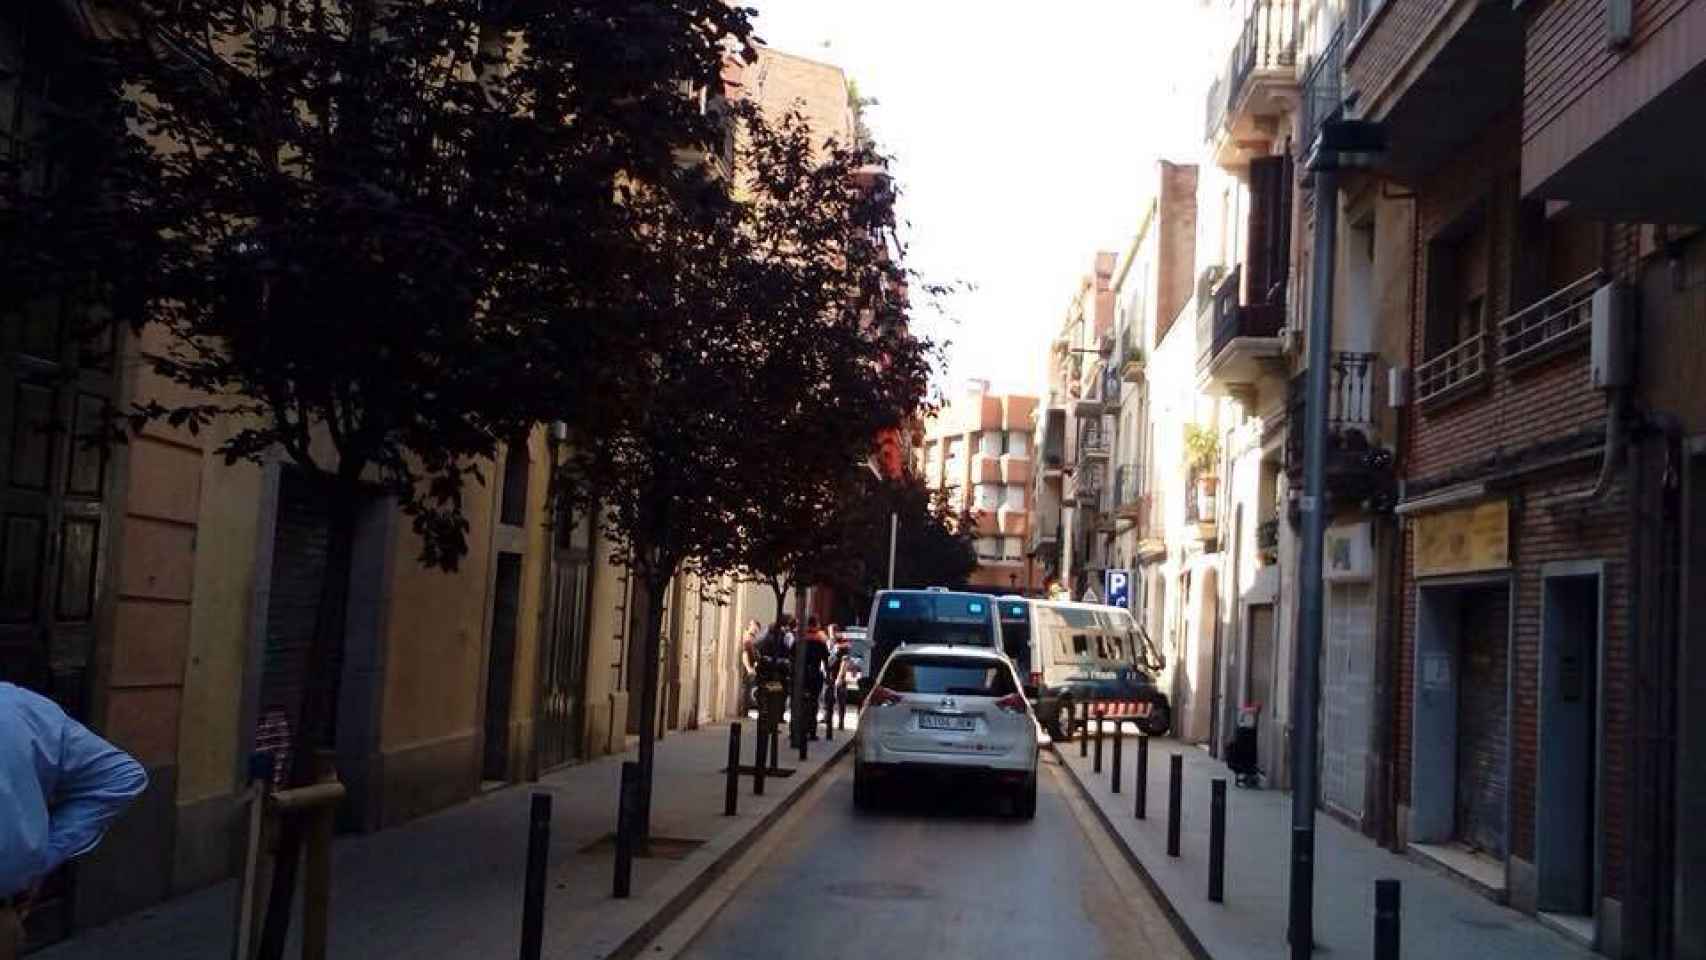 El desahucio, entre las calles Gayarre y Leiva, ha contado con la presencia de 5 furgones de Mossos